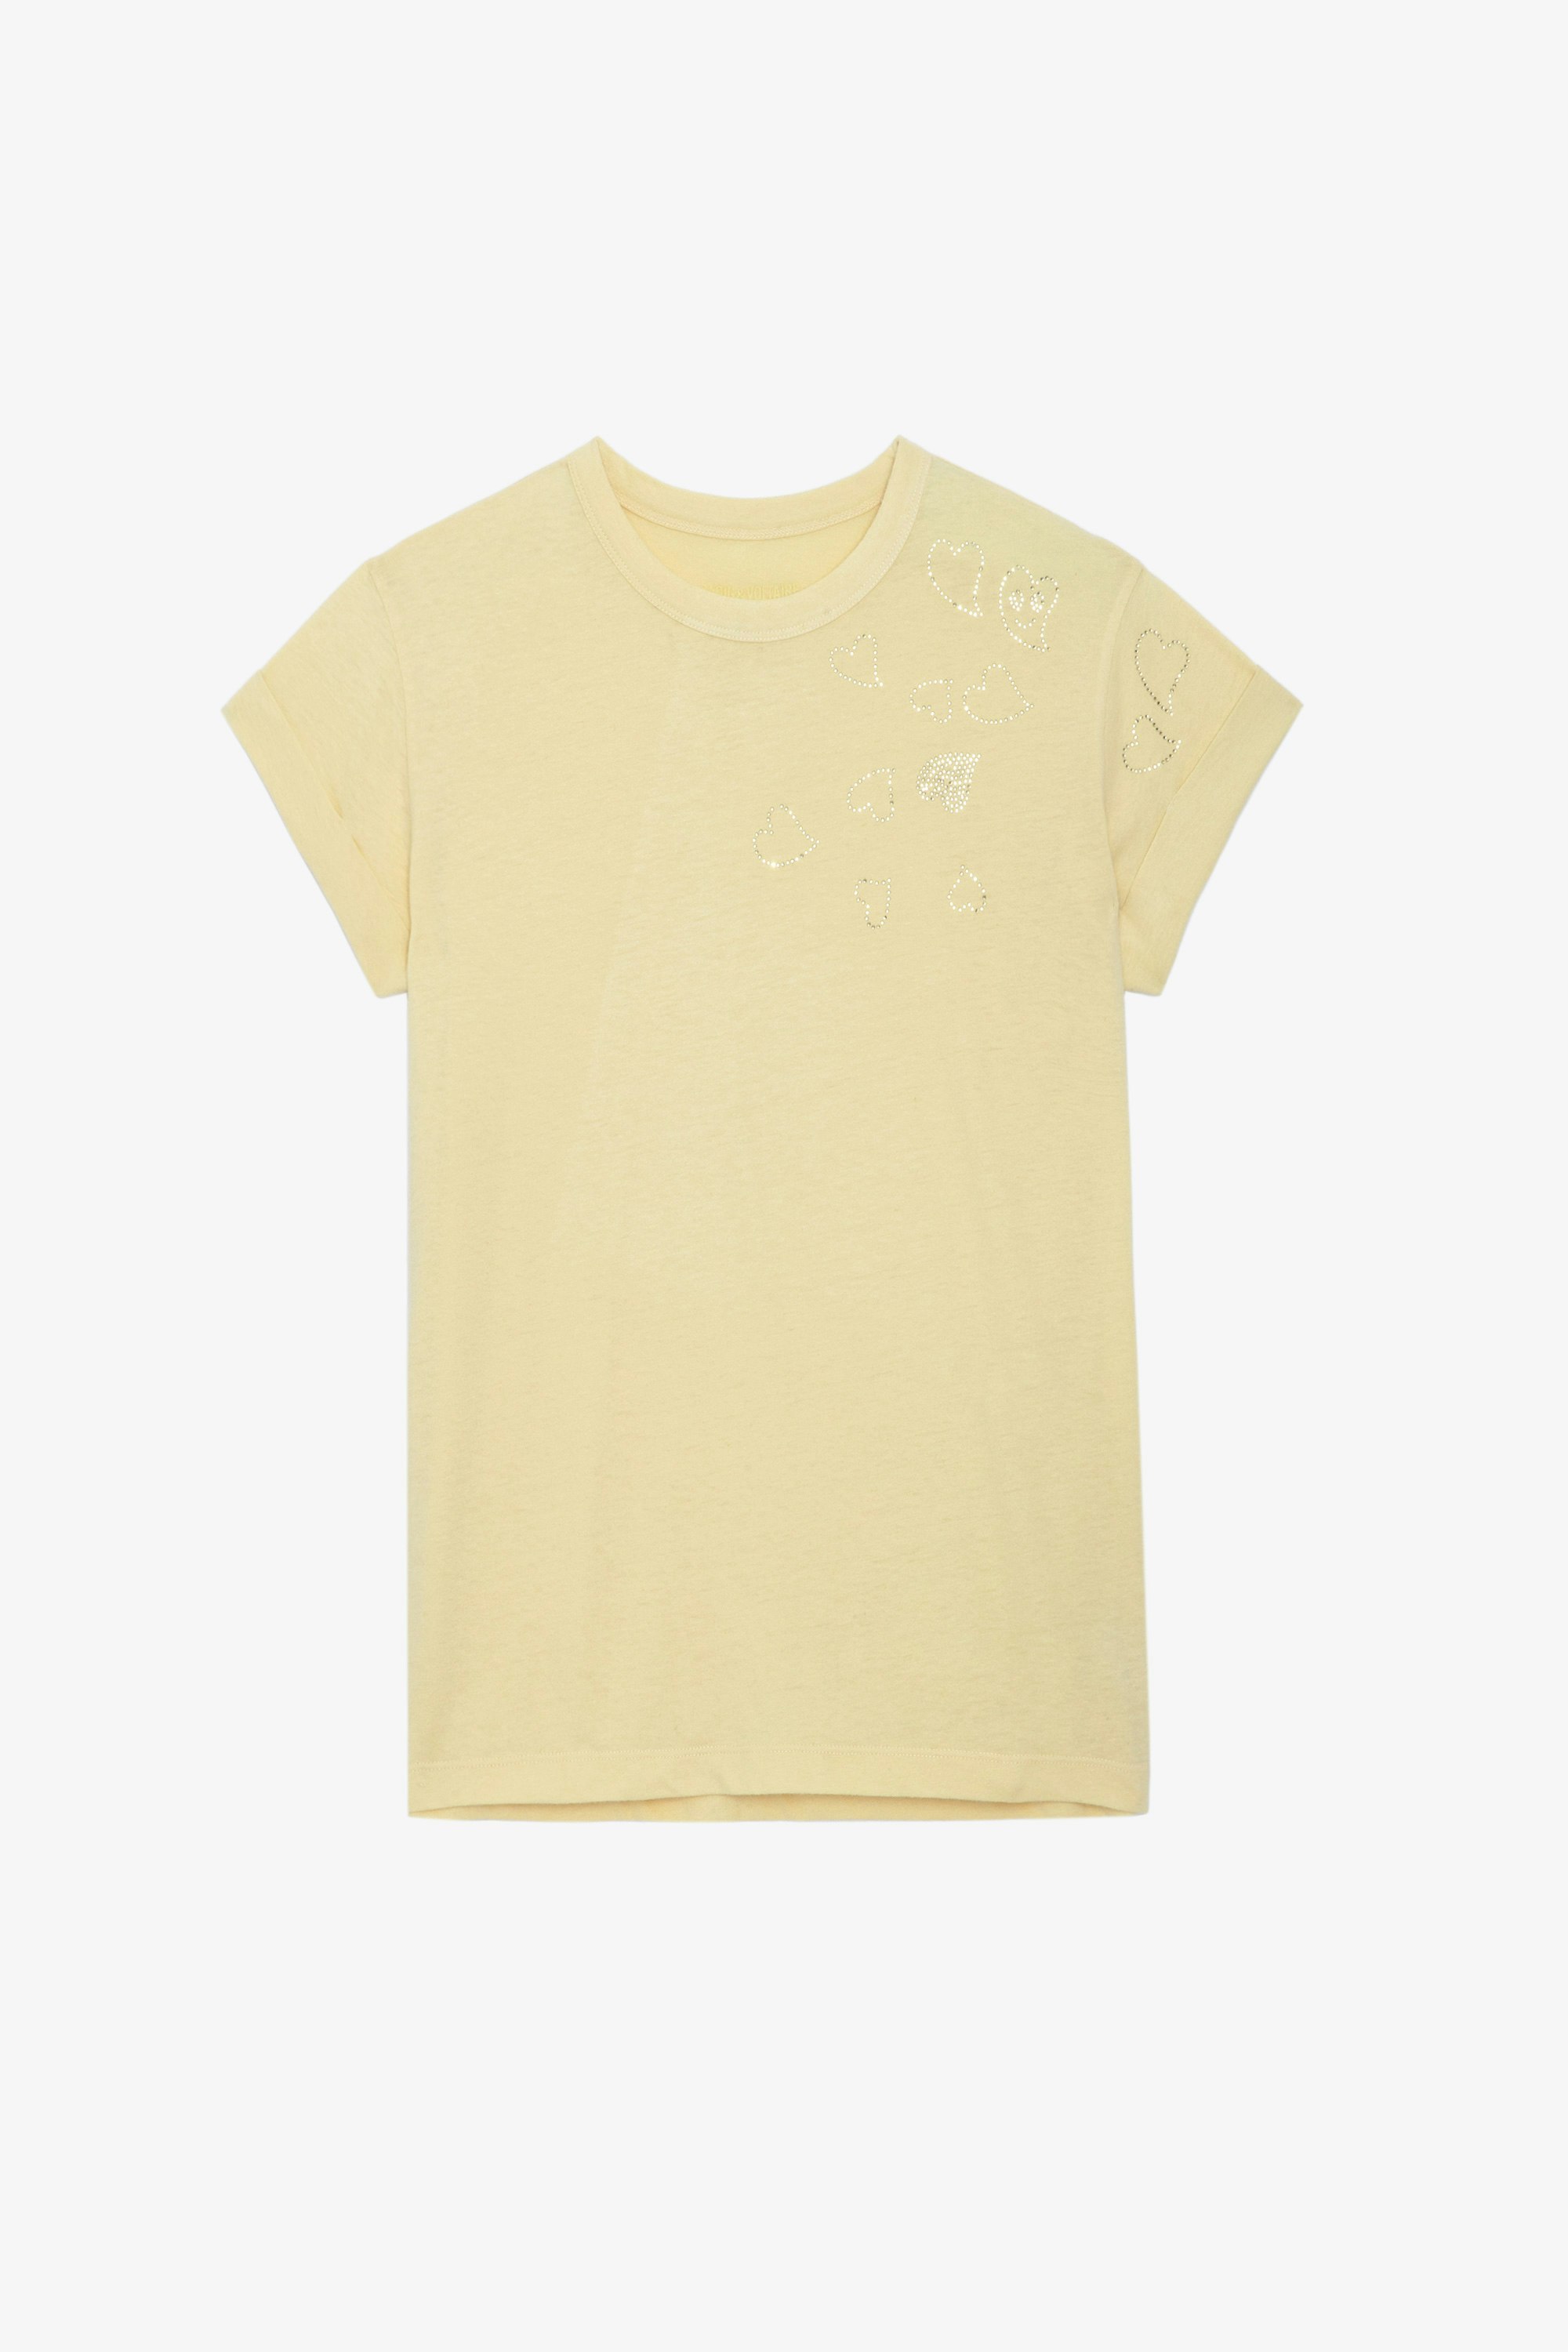 Camiseta con Strass Anya - Camiseta de color amarillo claro con cuello redondo, mangas cortas y strass de corazones.